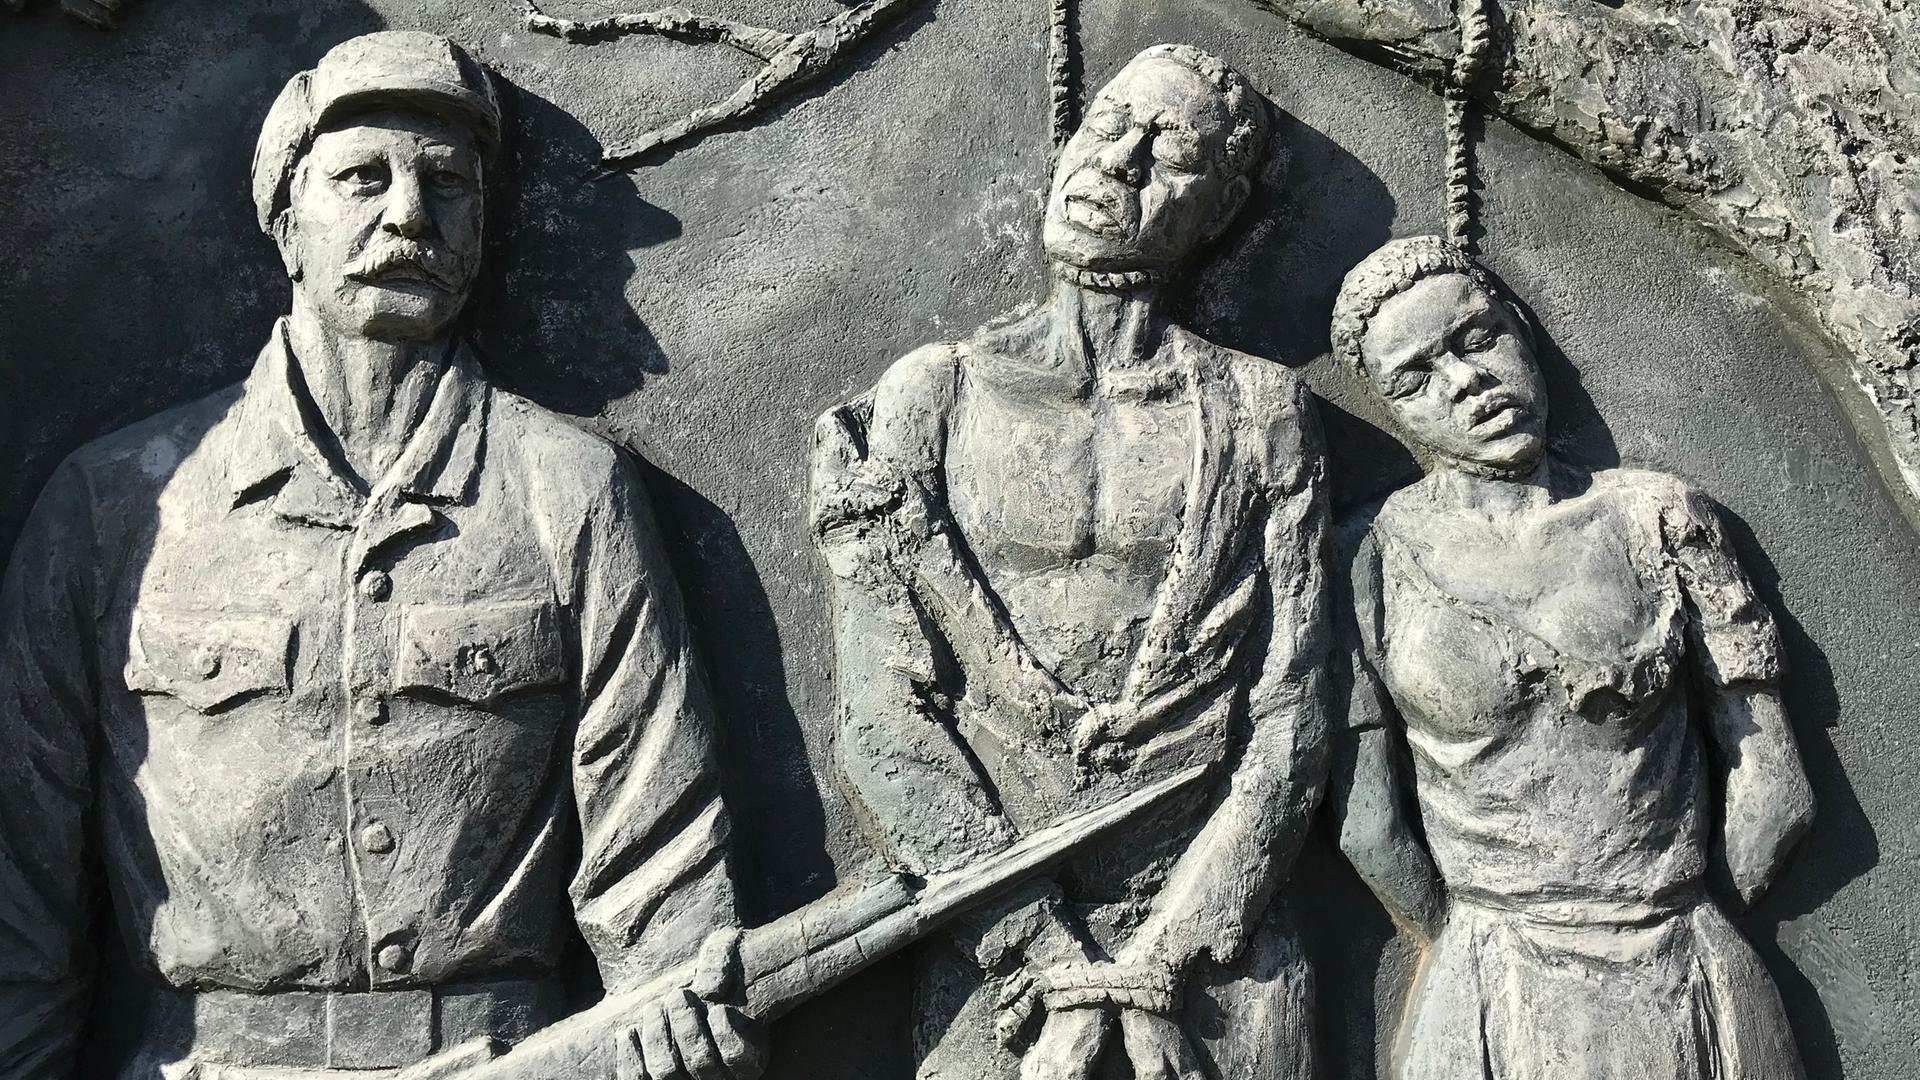 Ein Denkmal zeigt drei an einem Baum gehenkte Menschen und zwei bewaffnete Soldaten neben ihnen.